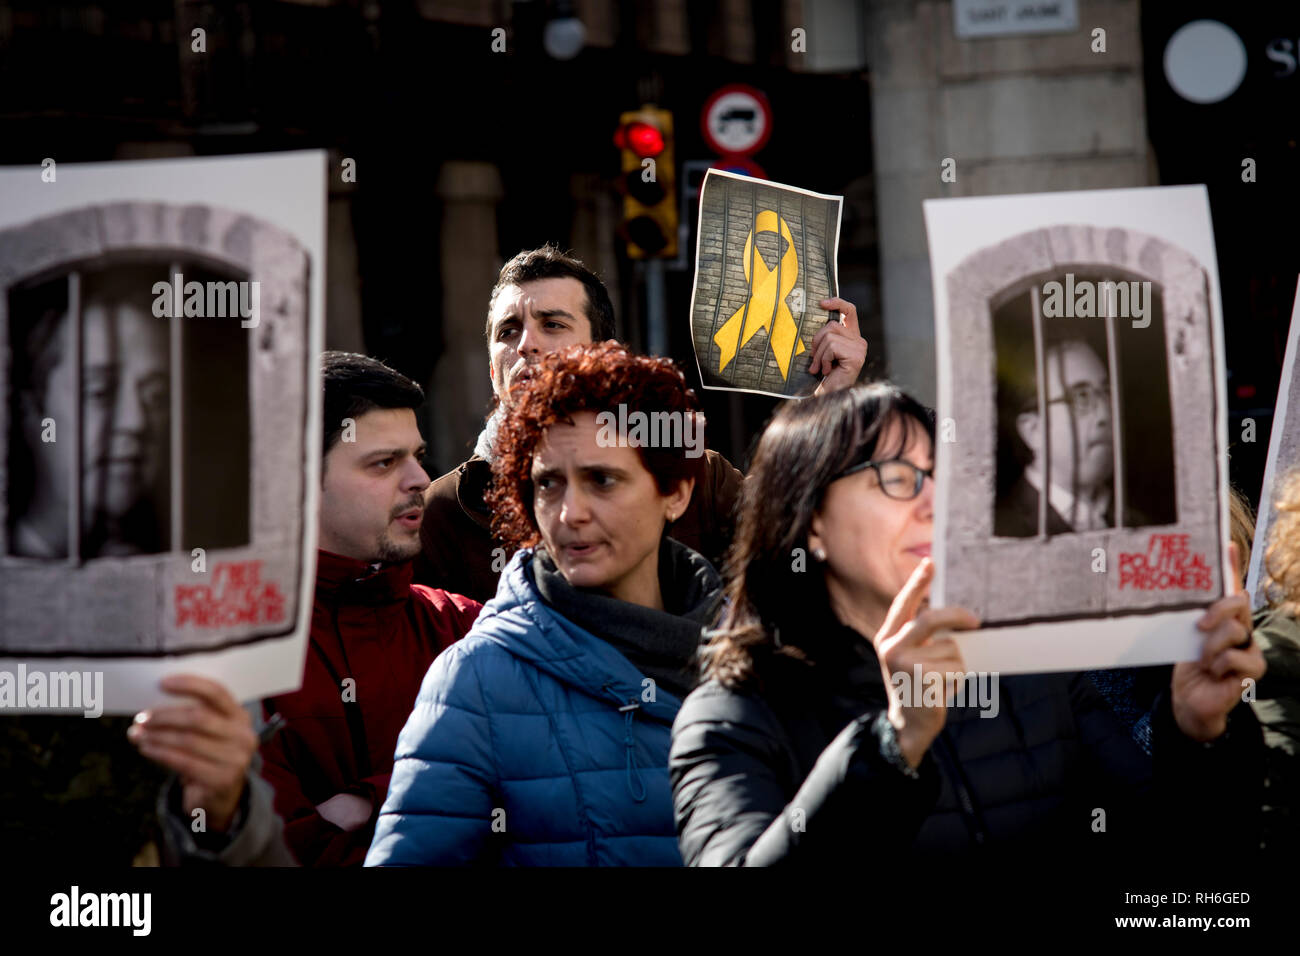 Barcelone, Espagne. 1er février 2019. Des manifestants à Barcelone de bannières tenir emprisonné les dirigeants catalans. Ce vendredi les chefs séparatistes catalans emprisonnés sont transférés de leurs prisons actuelles en Catalogne à d'autres près de Madrid (Soto del Real pour les hommes, Alcalá Meco pour les femmes) pour assister à la cour au cours de leur procès. Crédit : Jordi Boixareu/Alamy Live News Banque D'Images